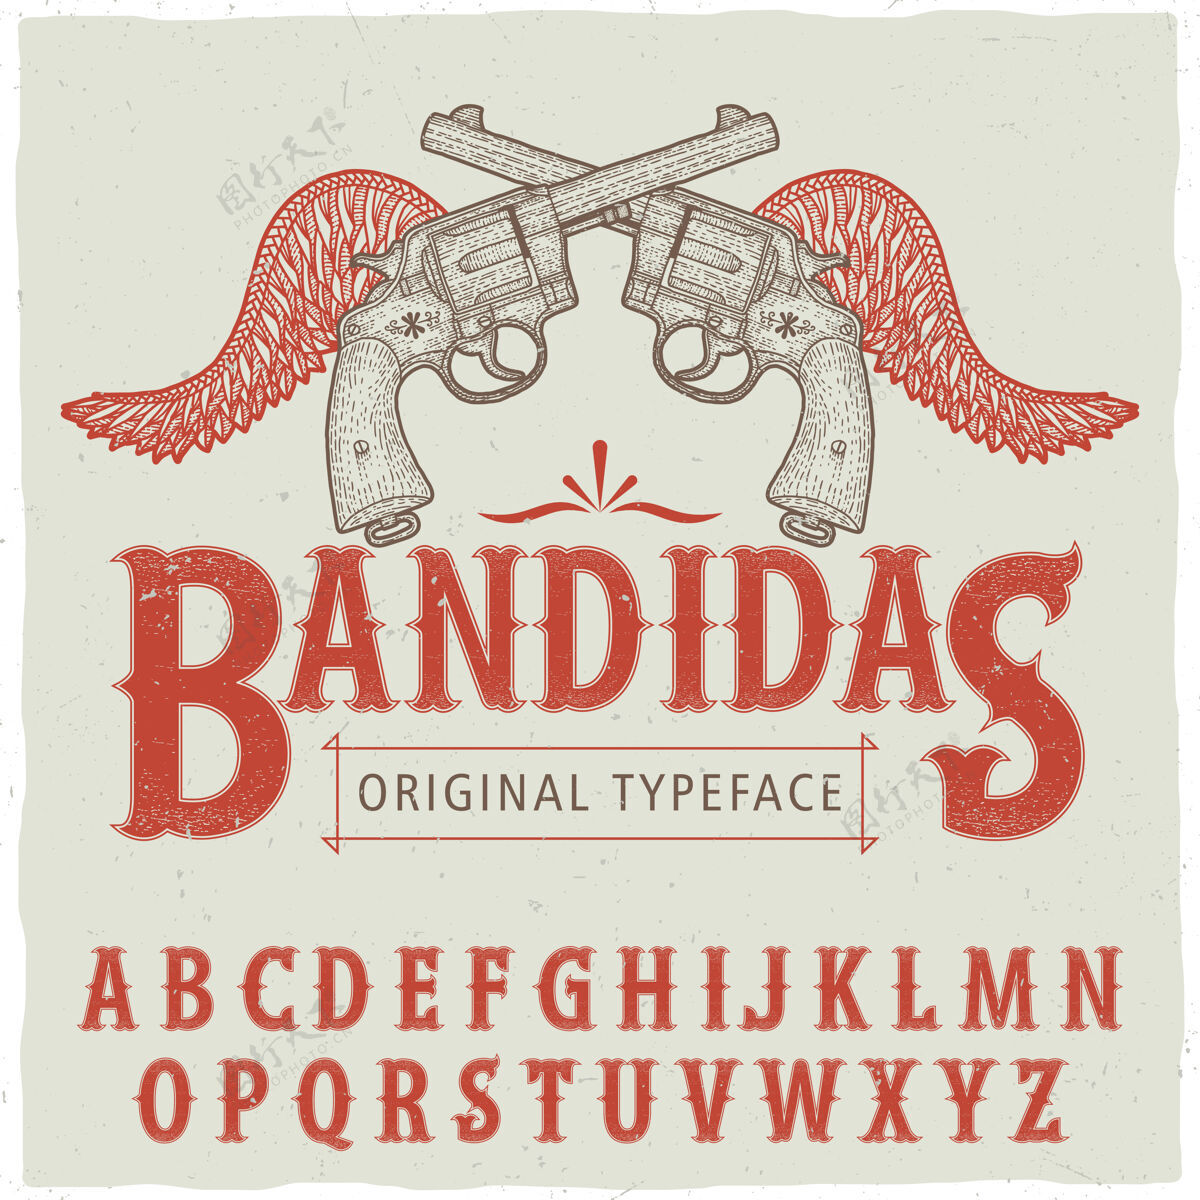 字母西方班迪达斯字体海报与手绘两把左轮手枪和翅膀矢量插图排版线条字体